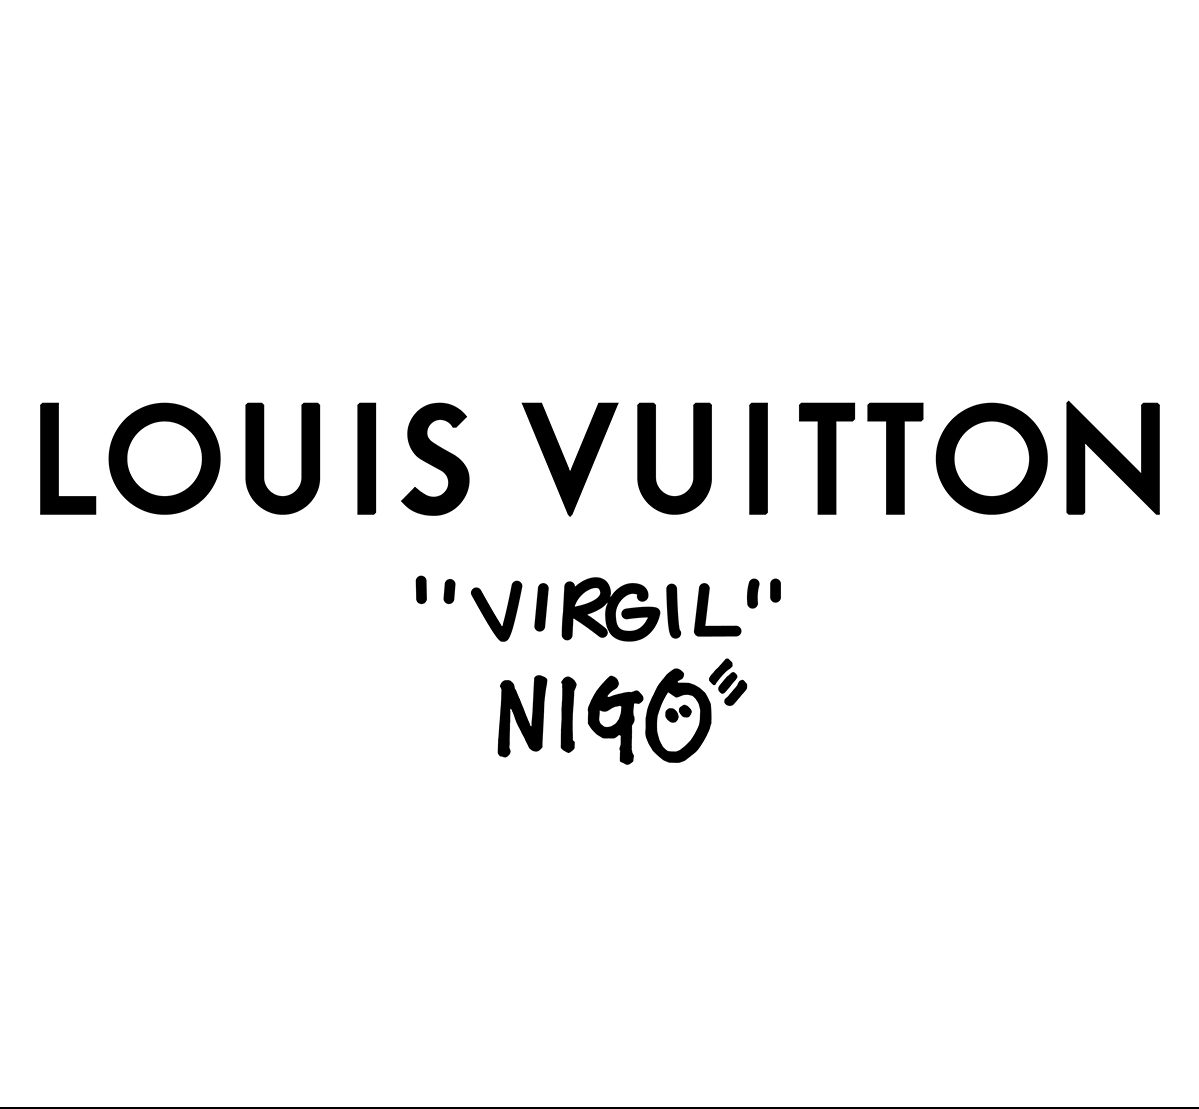 Shop The Louis Vuitton x Nigo Collaboration Now - ICON